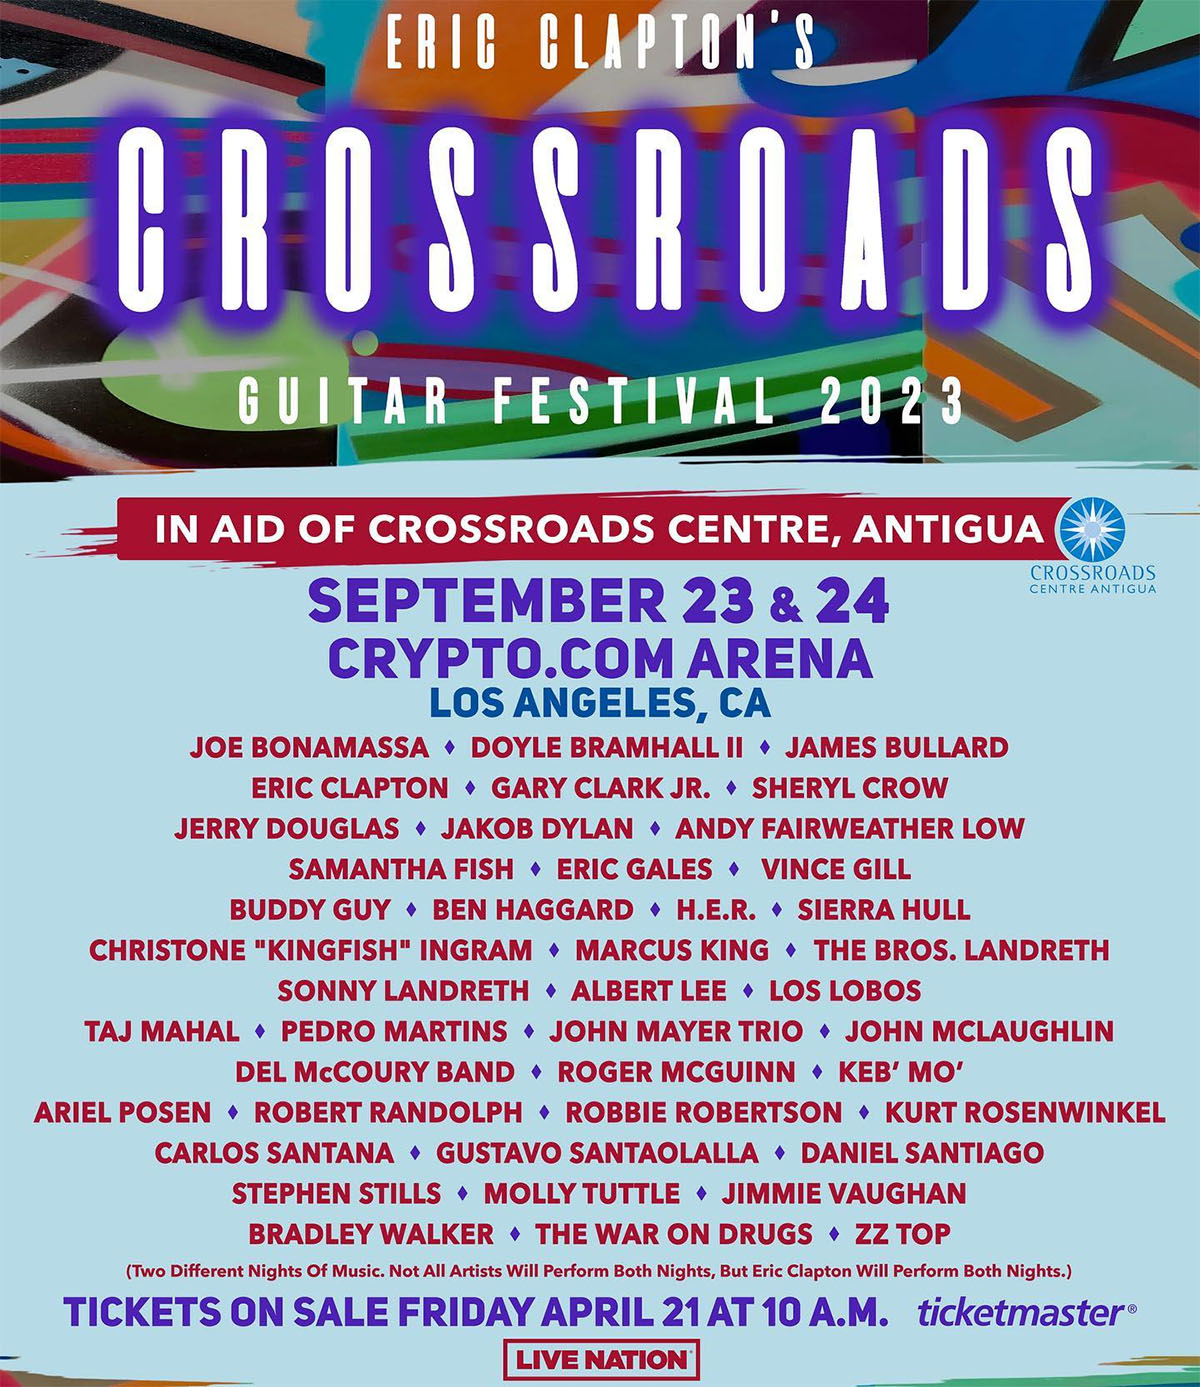 Eric Clapton's Crossroads Guitar Festival at Crypto.com Arena